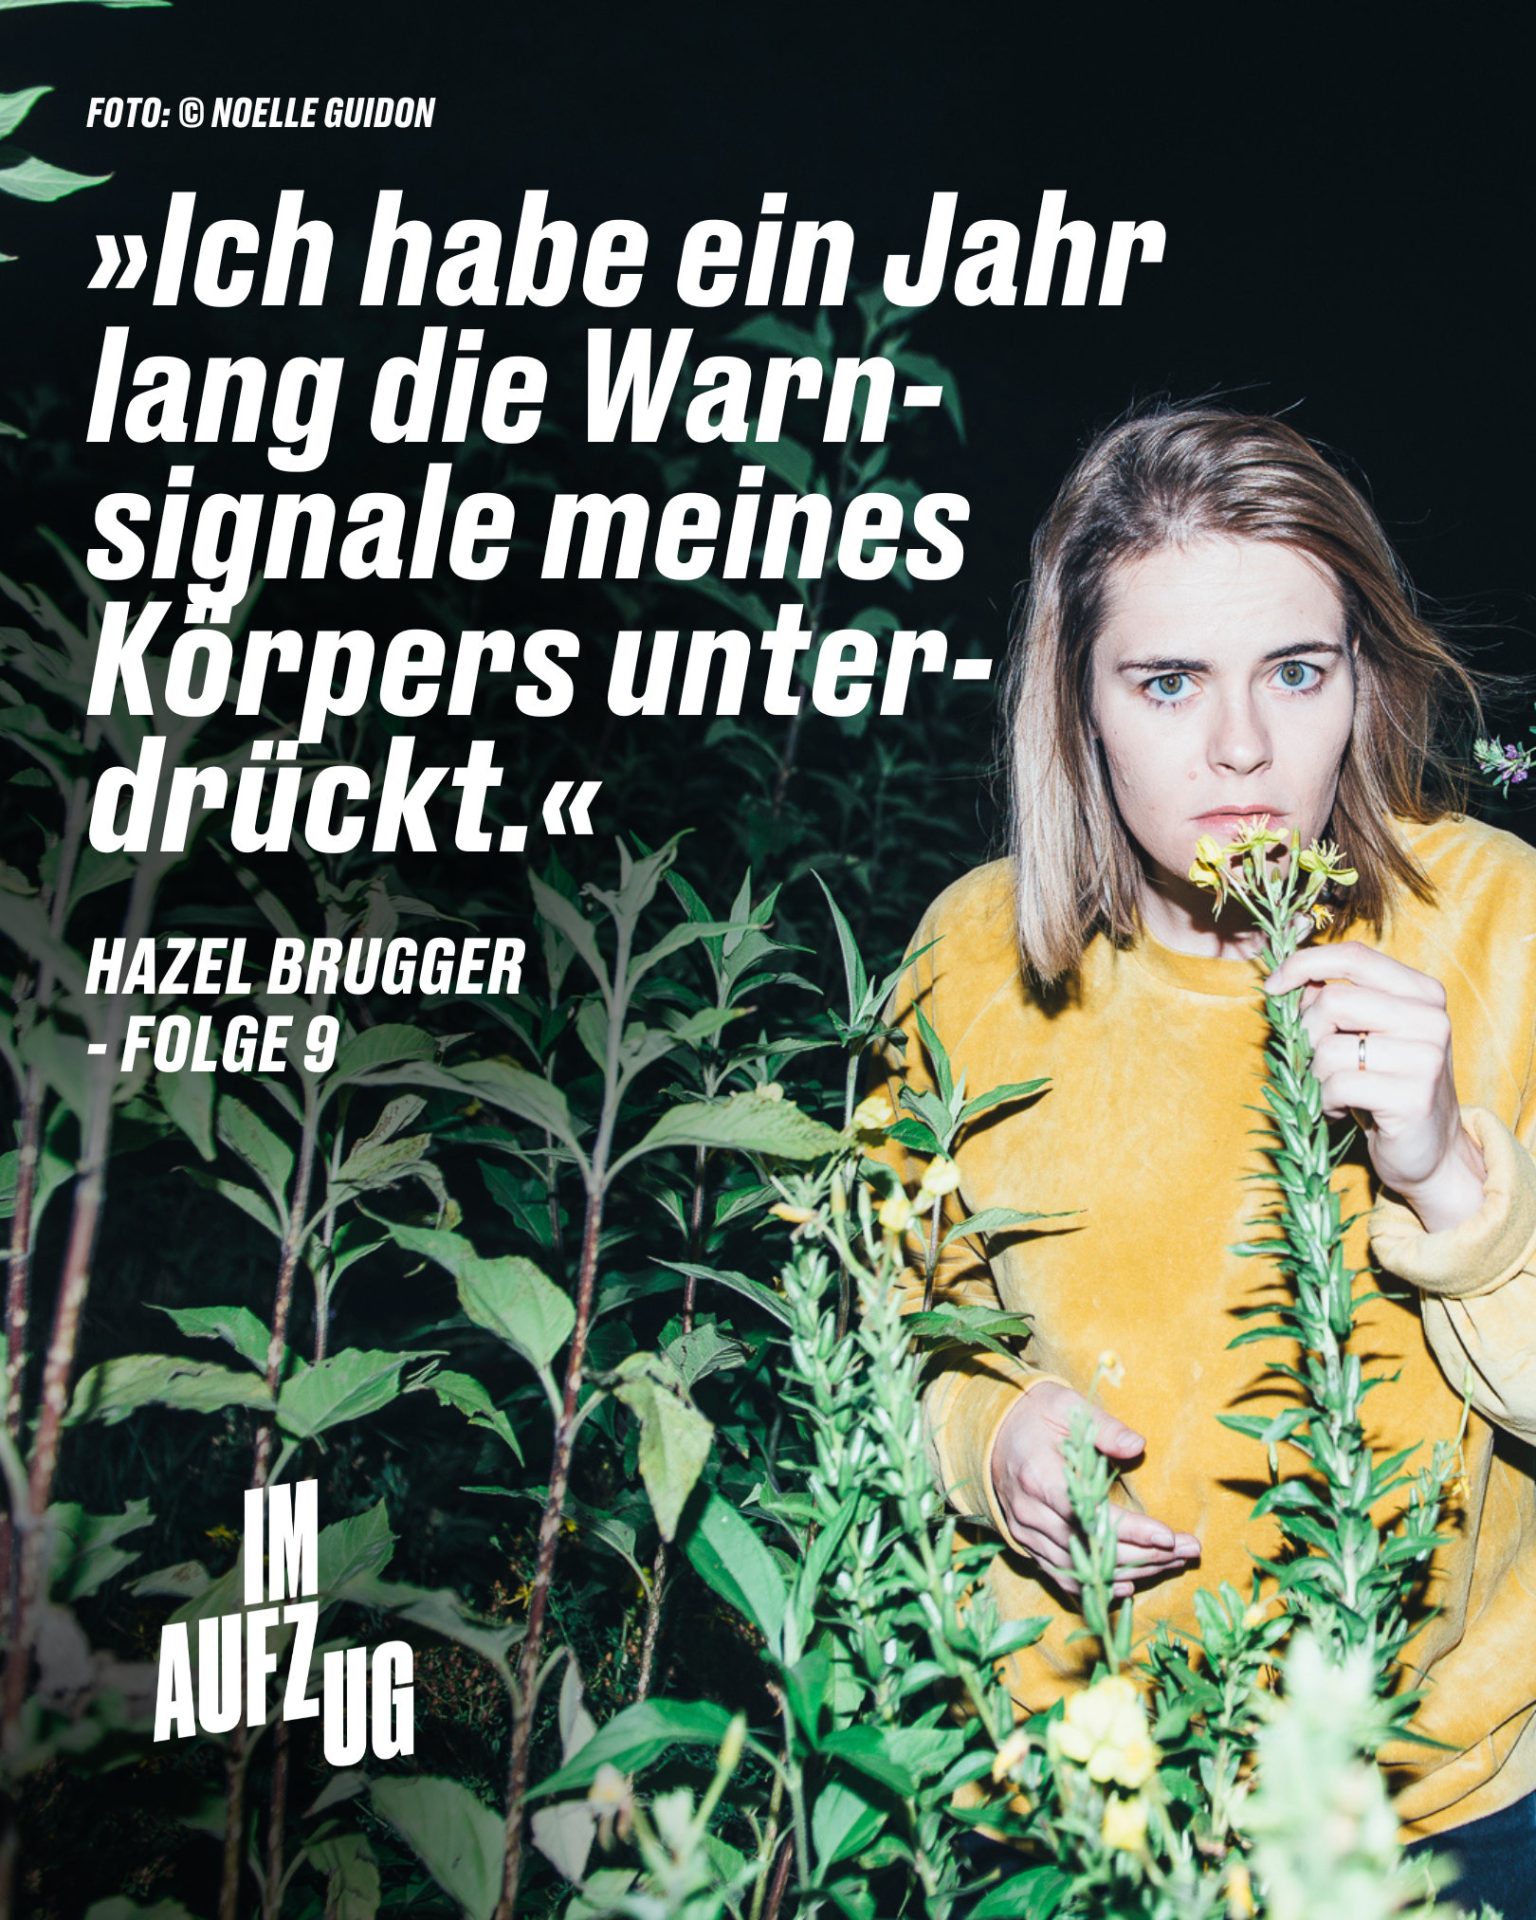 Portrait von Hazel Brugger, Zitattext: Ich habe ein Jahr lang die Warnsignale meines Körpers unterdrückt.